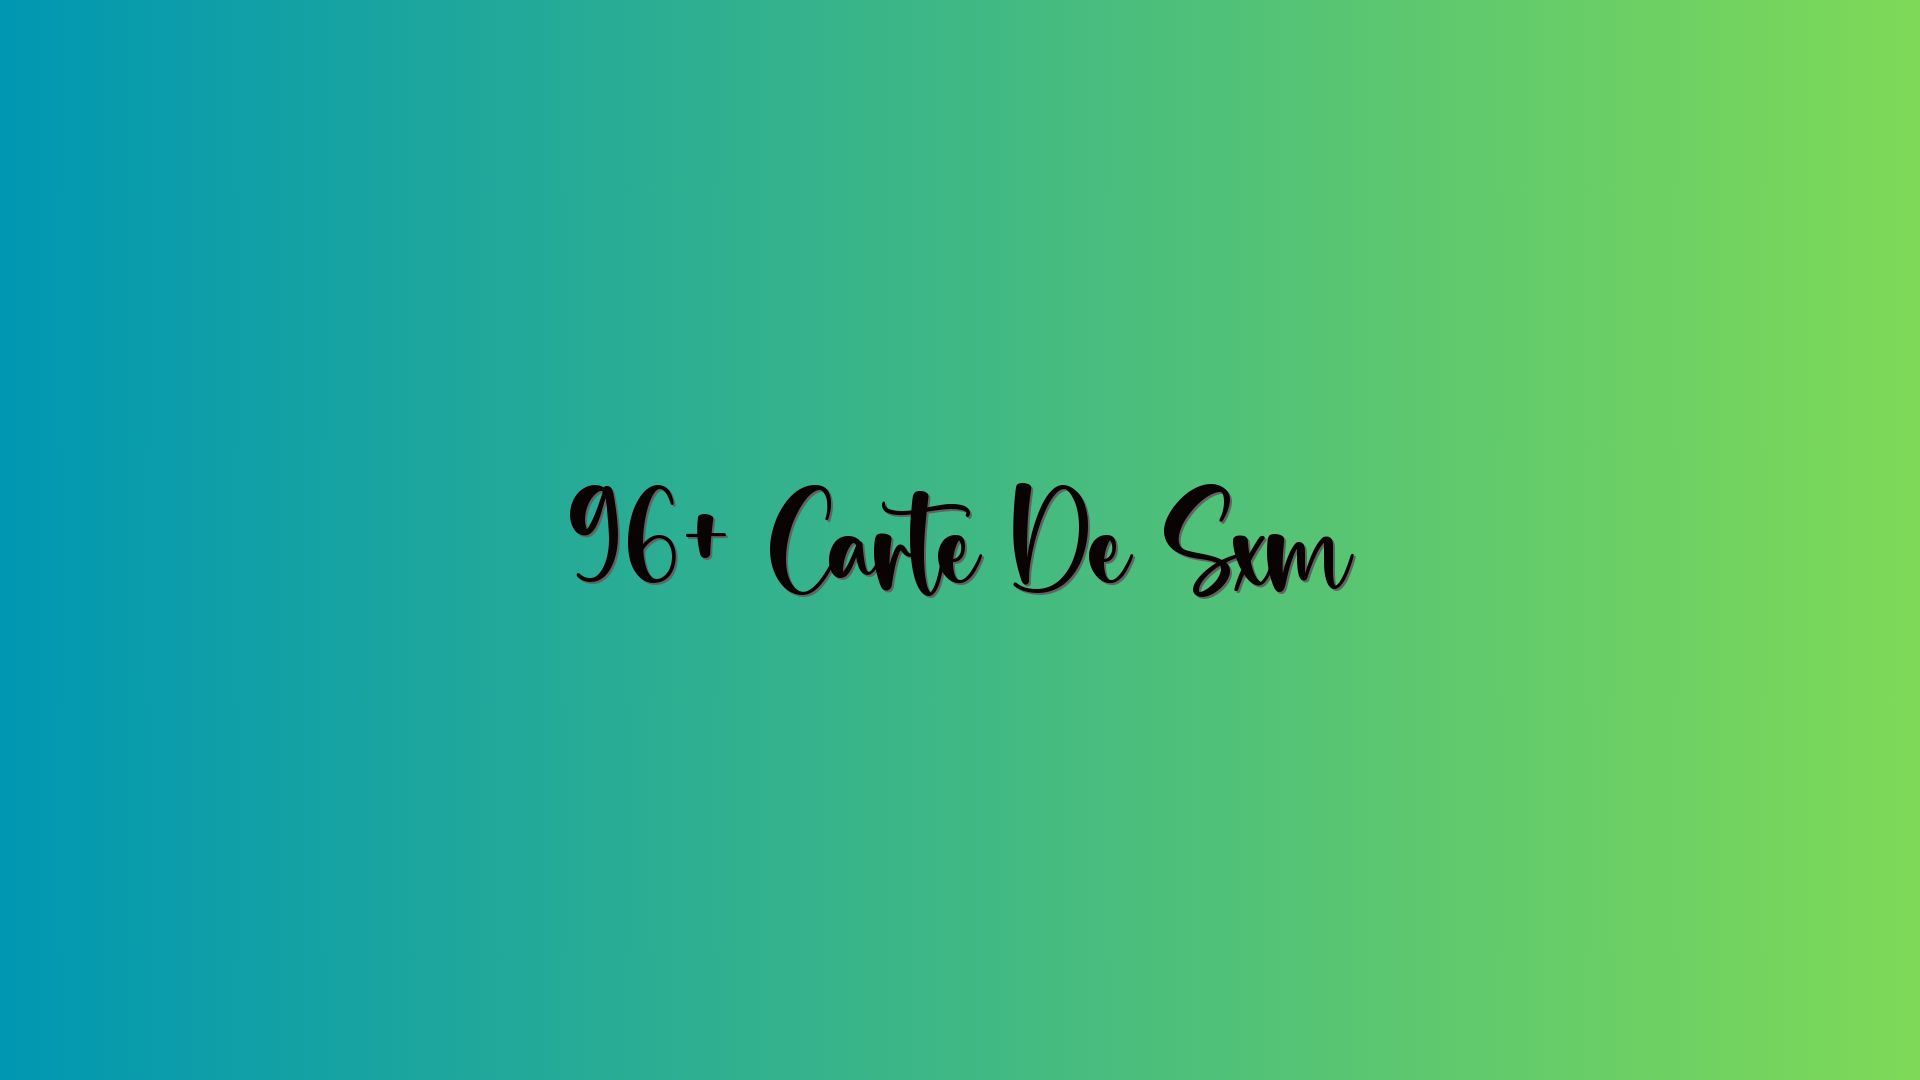 96+ Carte De Sxm